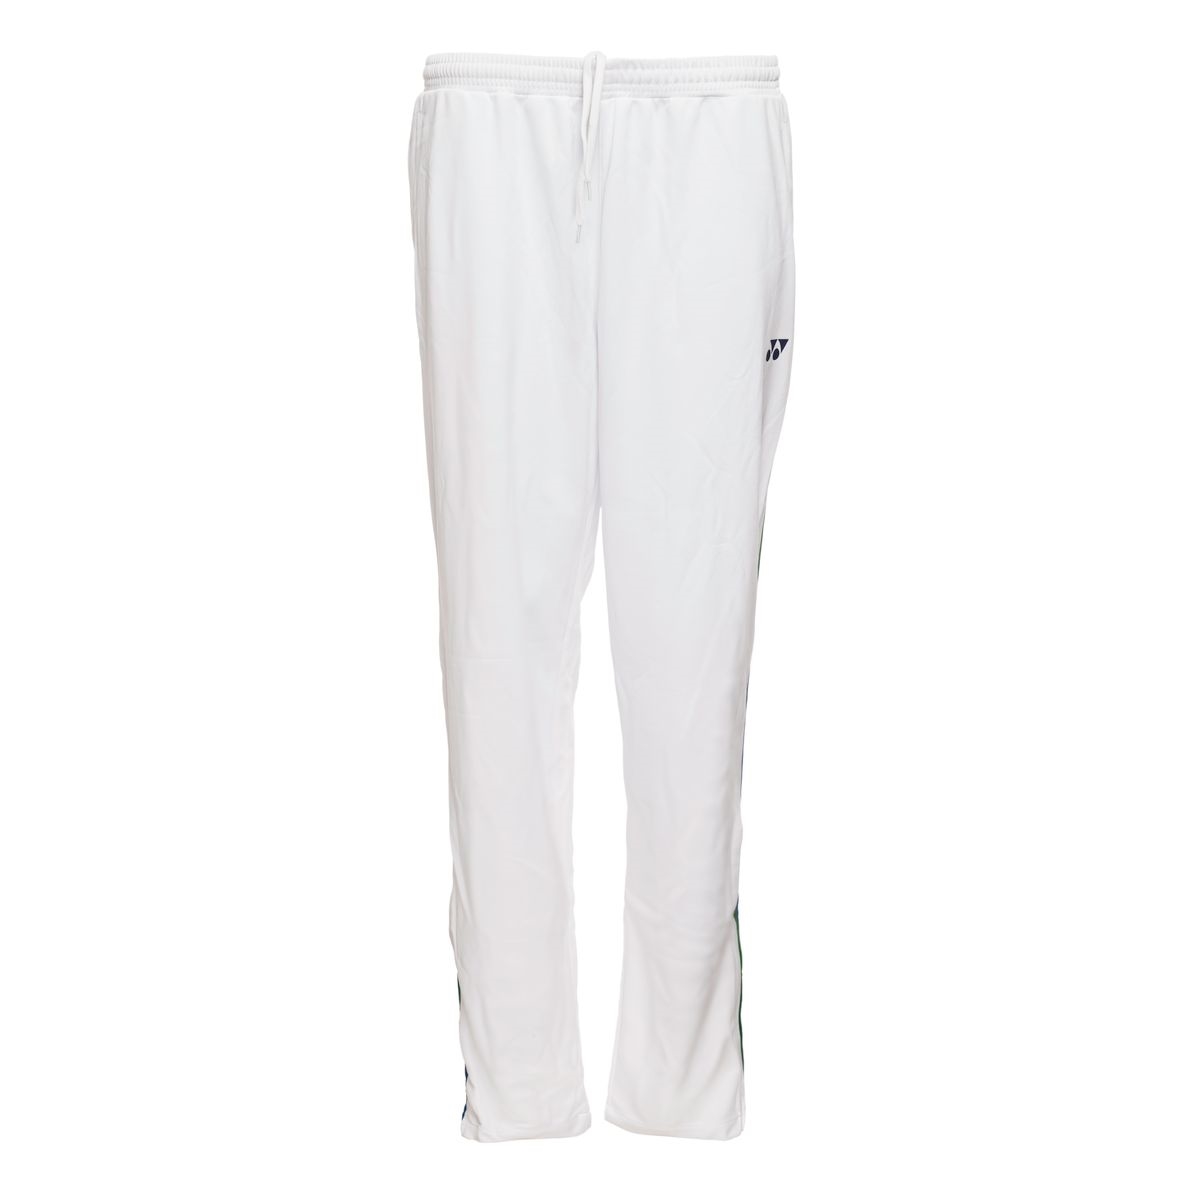 Sweatpants for badminton | Yonex 1968L Women Pants